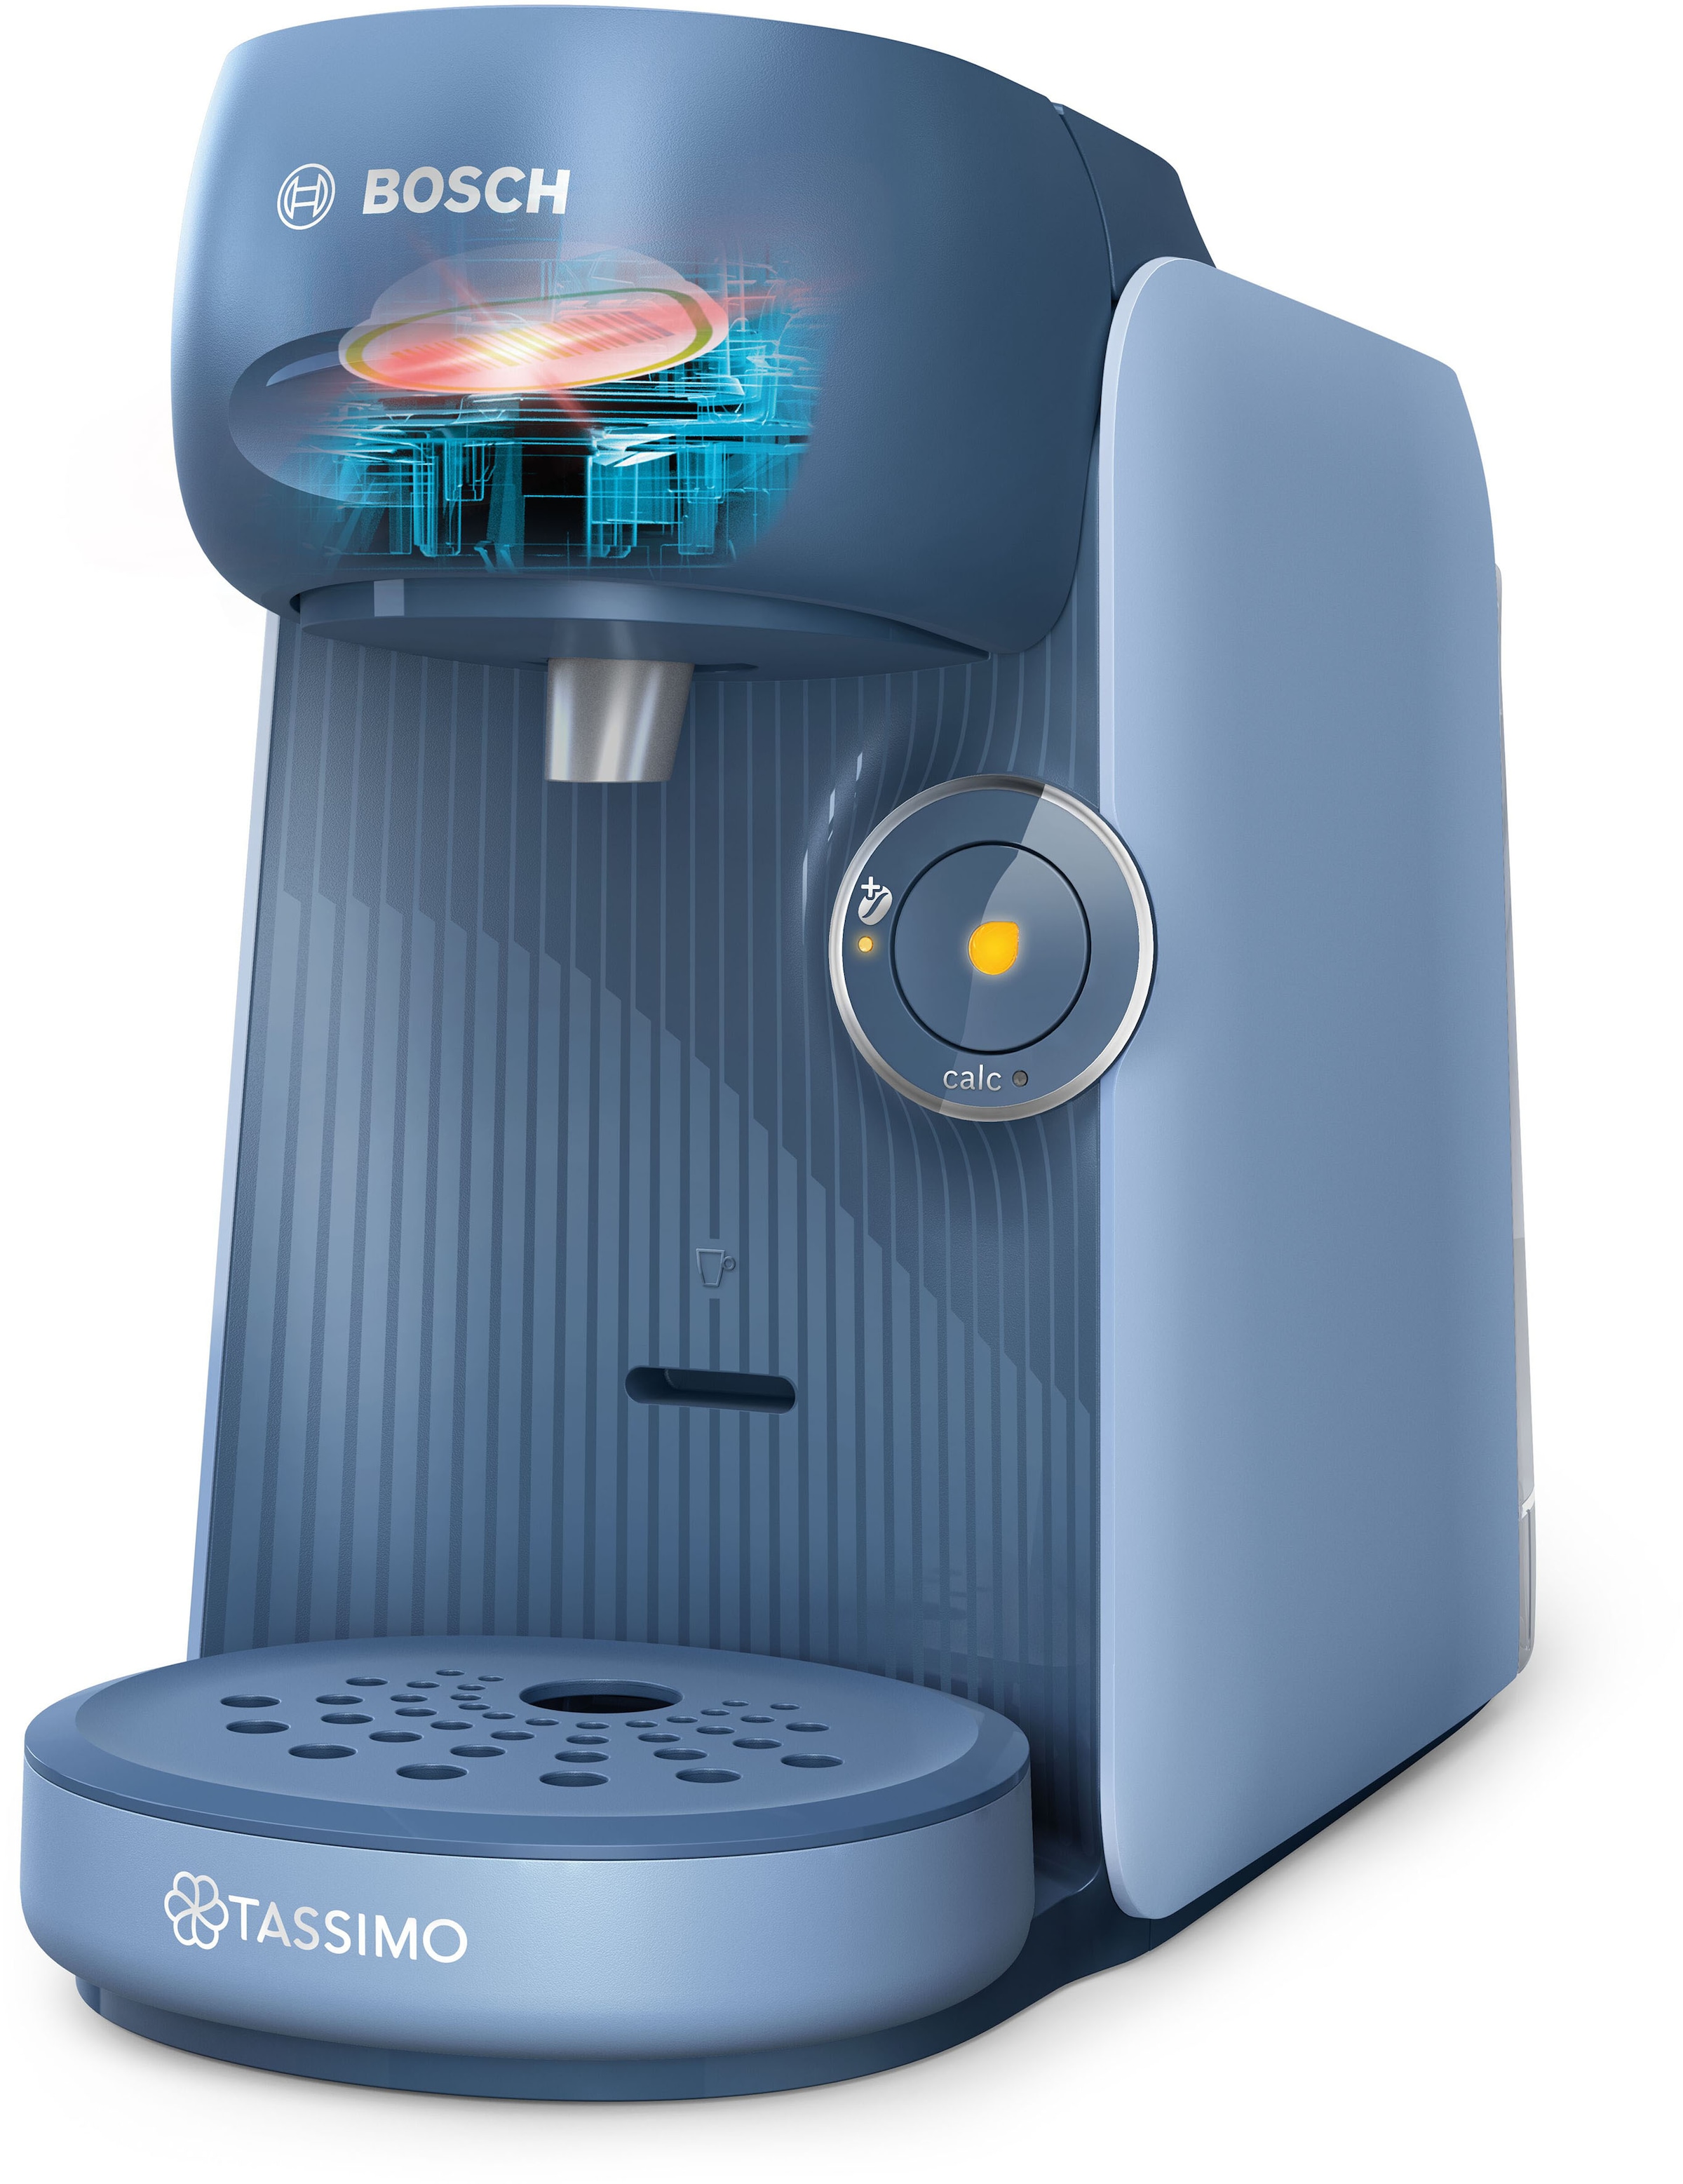 TASSIMO Kapselmaschine »FINESSE TAS16B5«, 1400 W, geeignet für alle Tassen, mehr Intensität per Knopfdruck